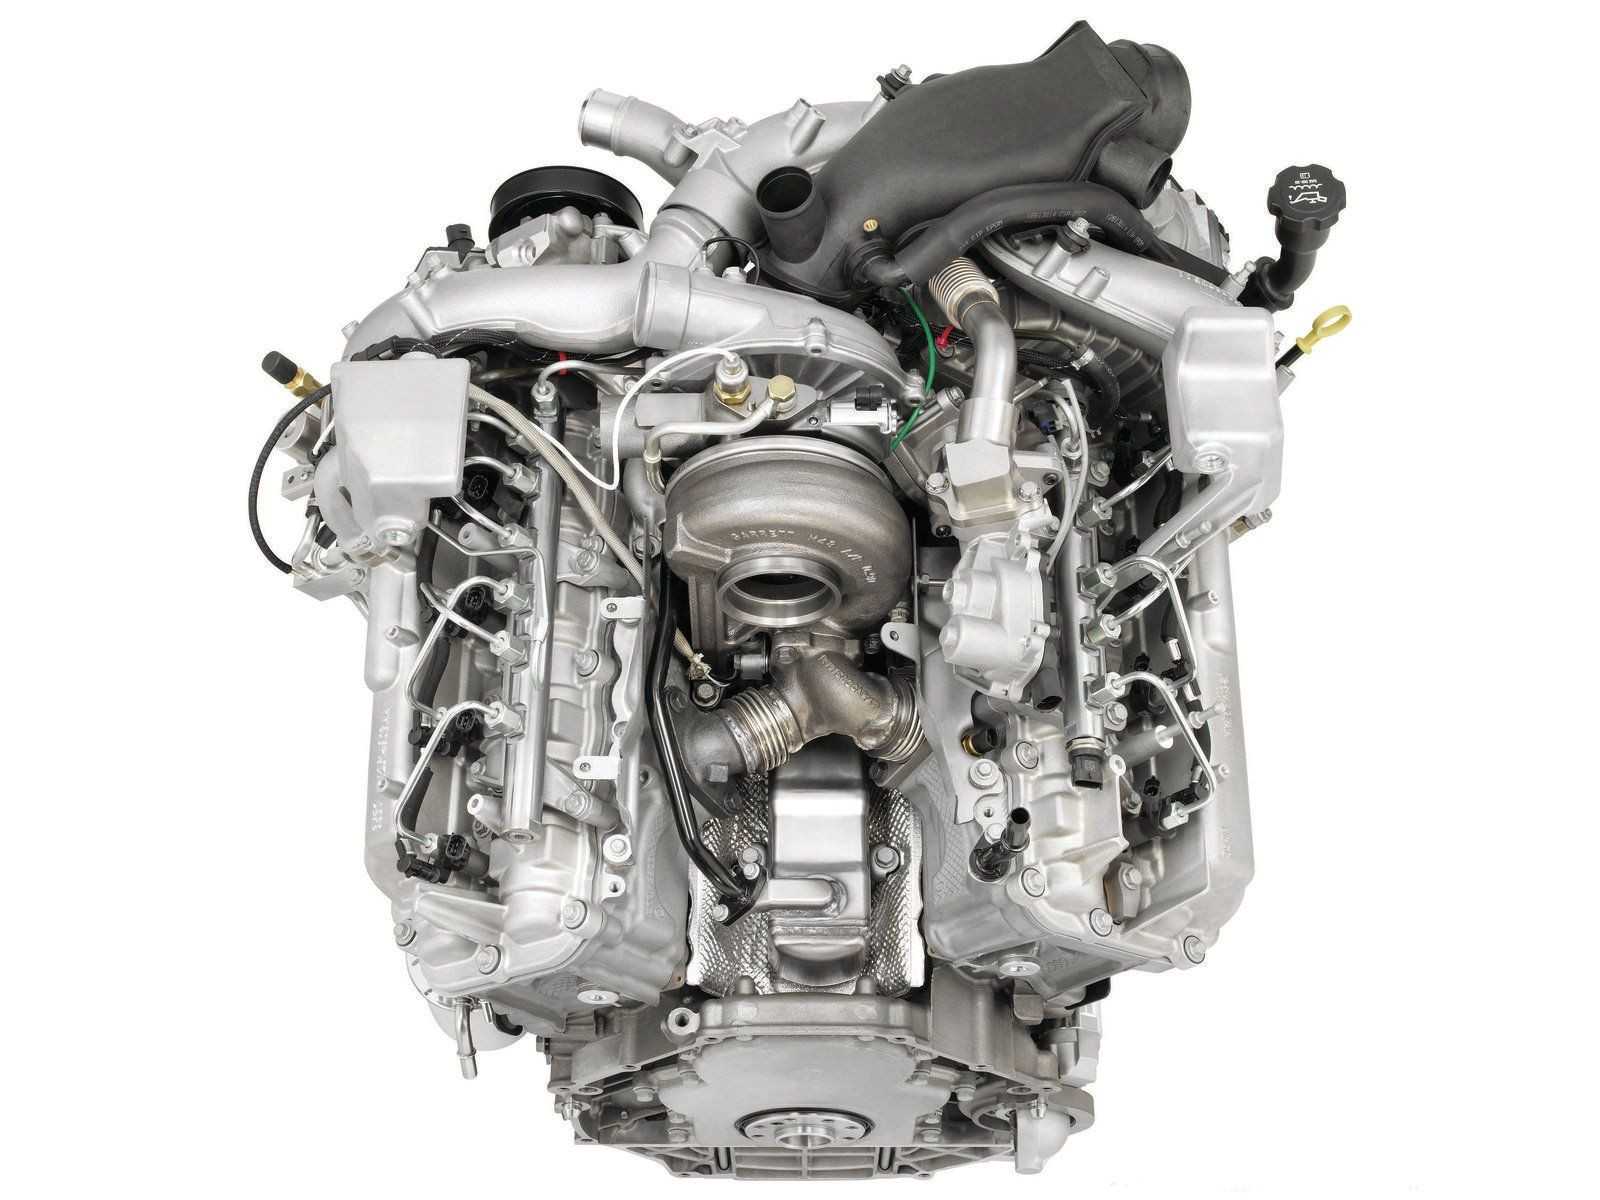 Впервые представленный в 2004 году, двигатель Duramax LLY представляет собой 32-клапанный дизельный двигатель с турбонаддувом, популярный среди моделей Hummer H1, Chevy Silverado и GMC Sierra Модернизация за предыдущие годы включала турбокомпрессор Garret